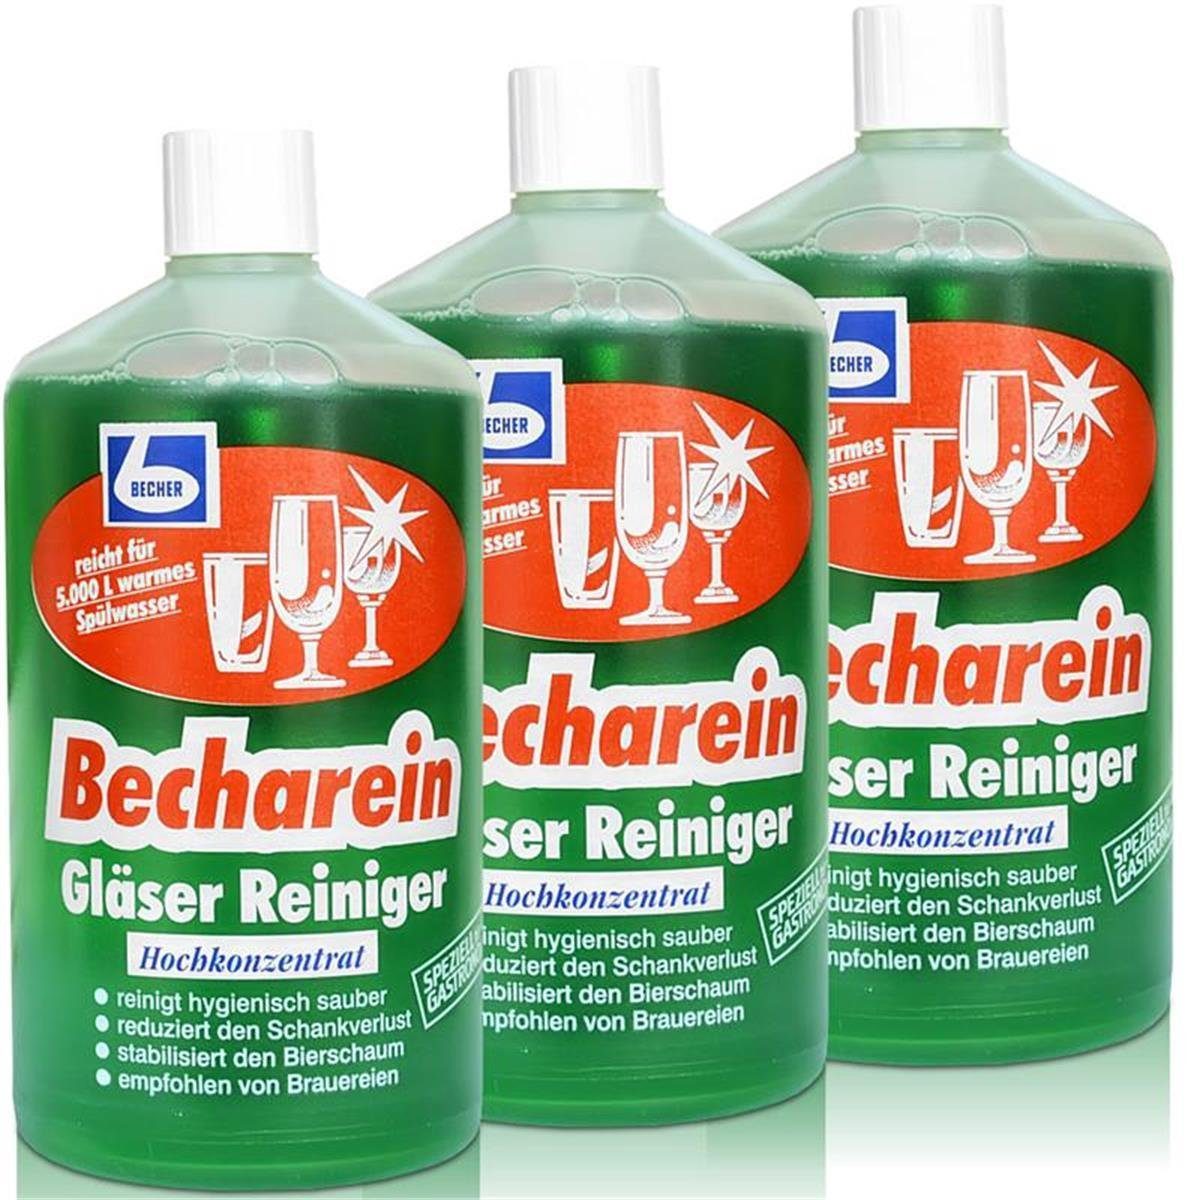 Dr. Becharein Hochkonzentrat / 3x Becher Liter 1 Reiniger Becher Glasreiniger Dr. Gläser